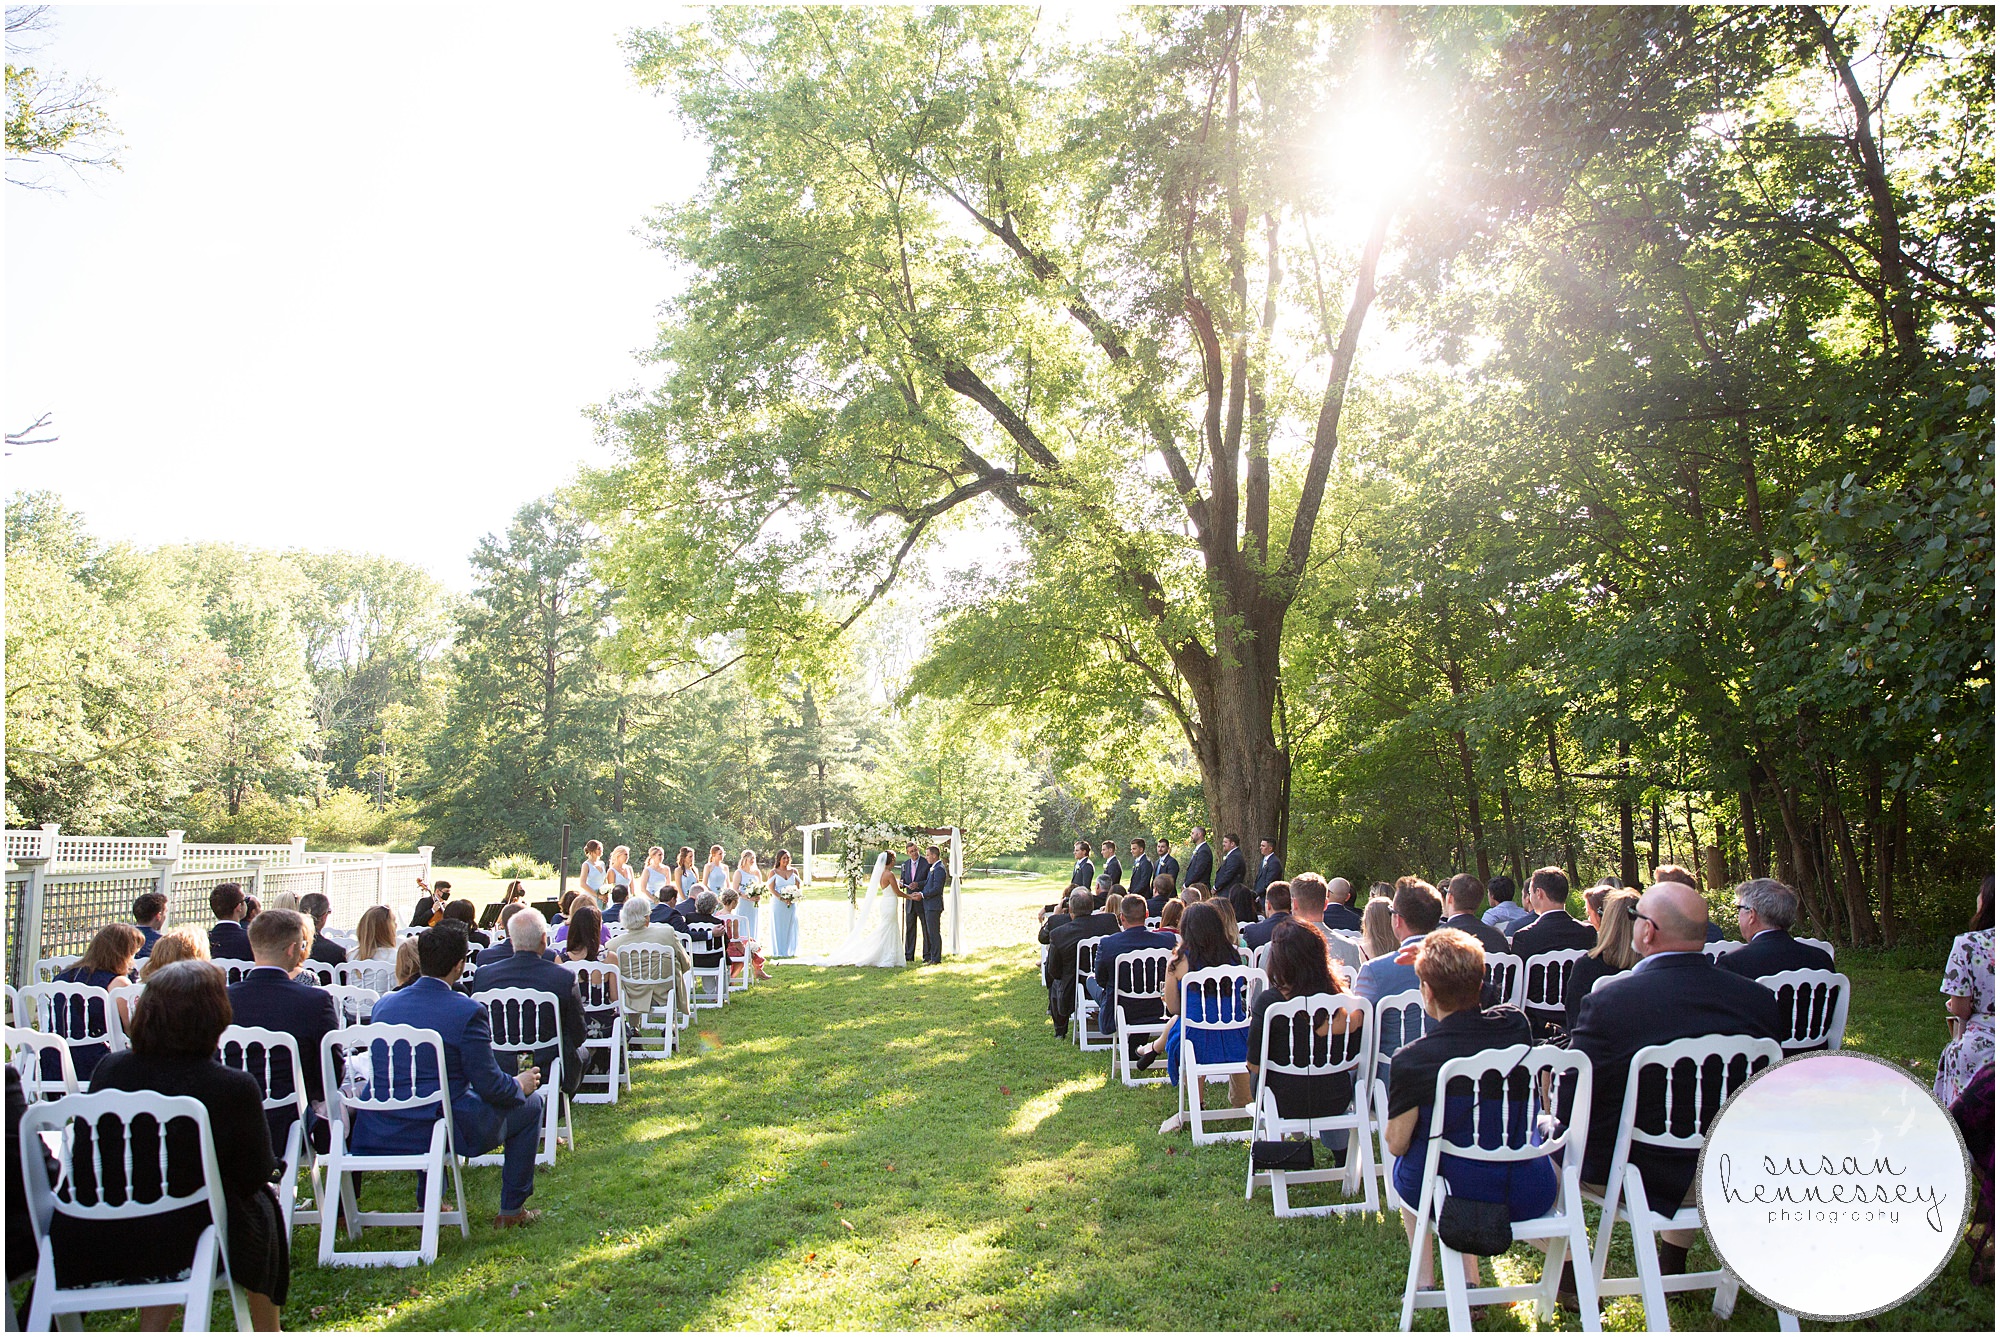 Ceremony at Inn at Barley Sheaf Farm outdoor wedding